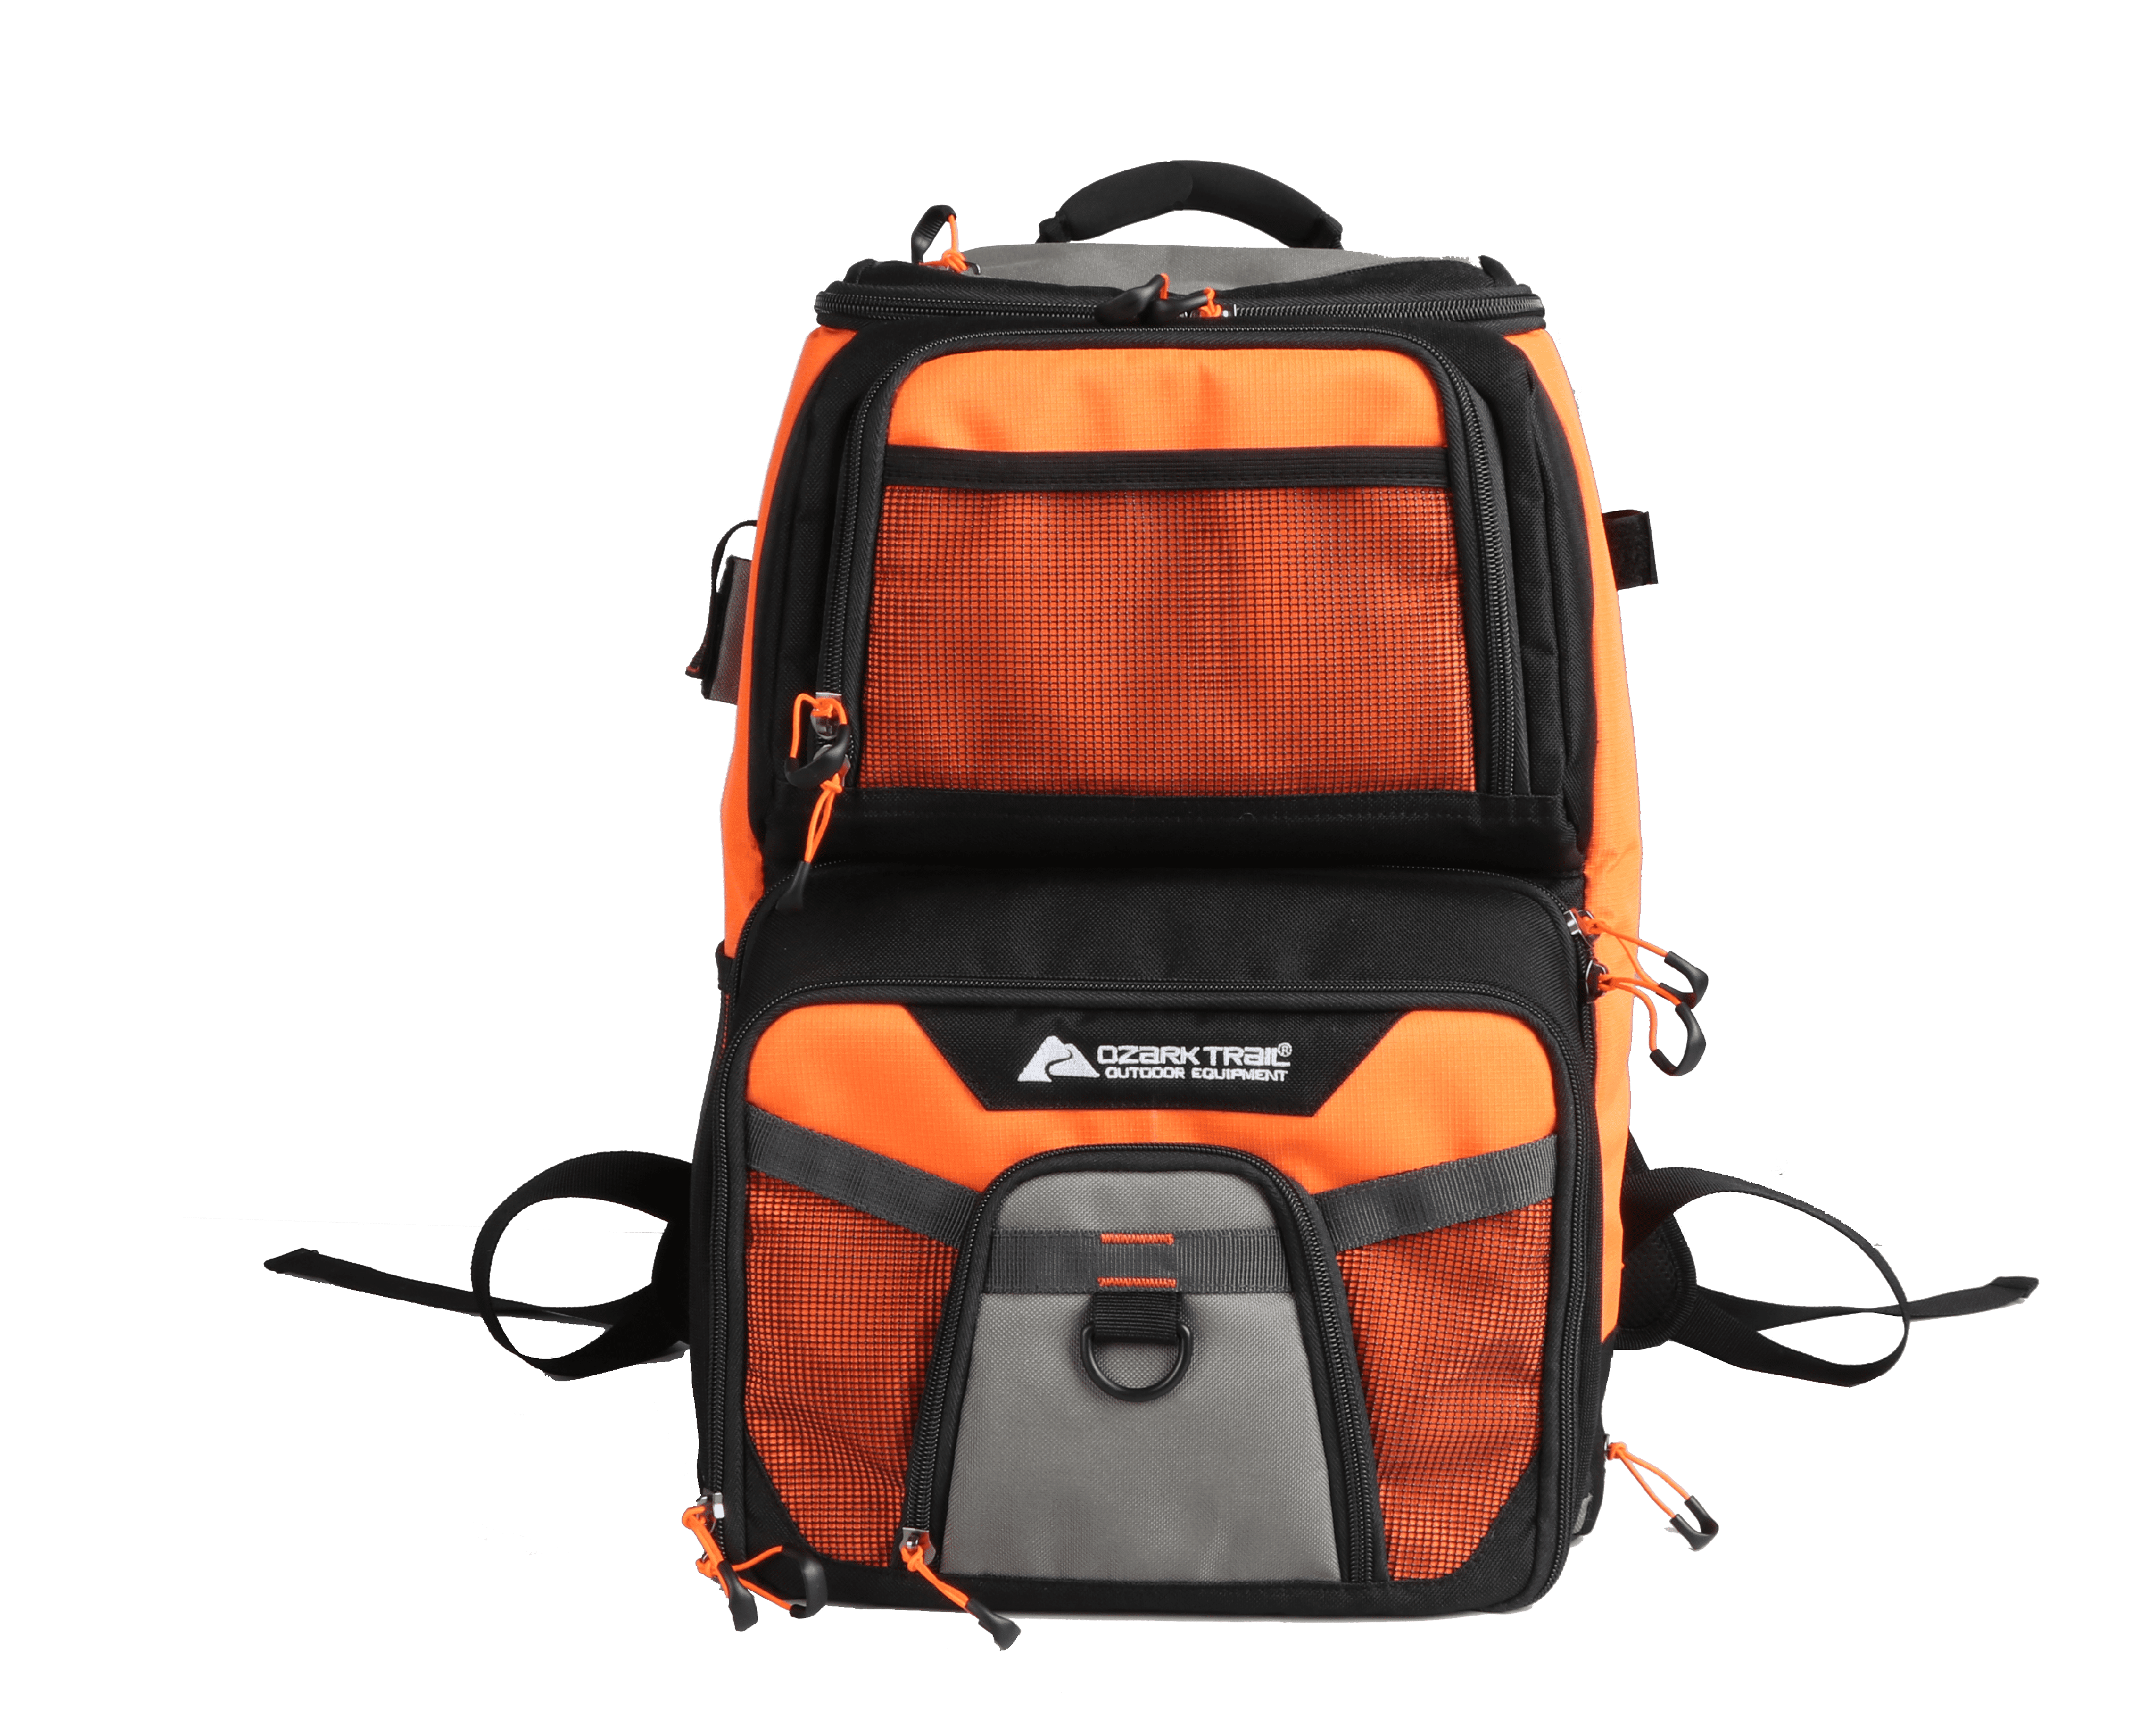 Hot Selling Orange Fishing Tackle Backpack Holds 3 Medium Boxes